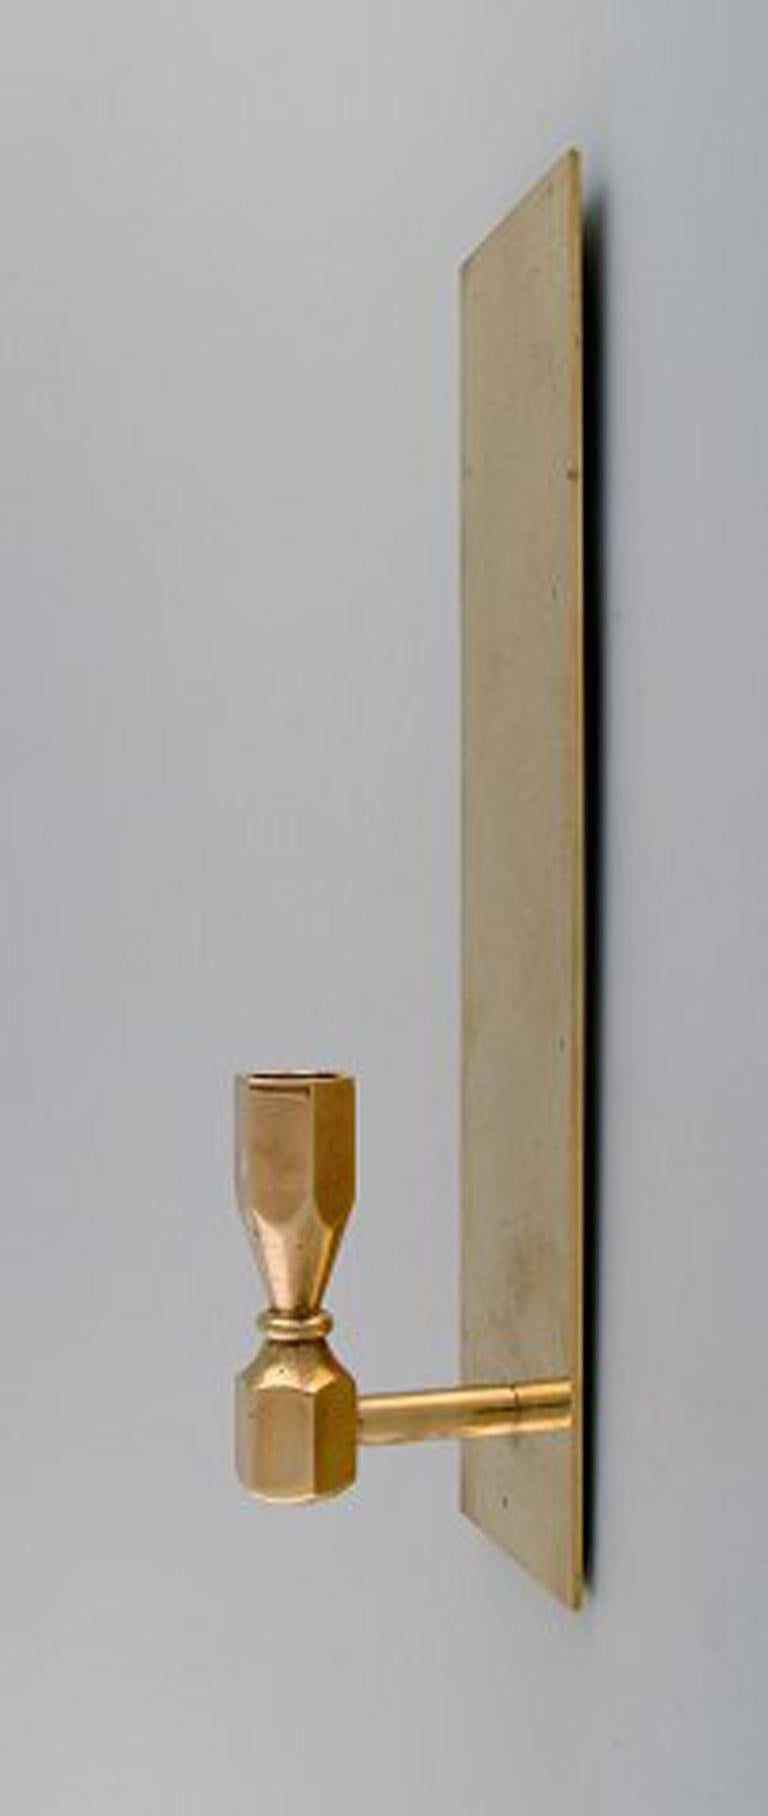 Scandinavian Modern Pair of Candlesticks in Brass, Scandinavian Design